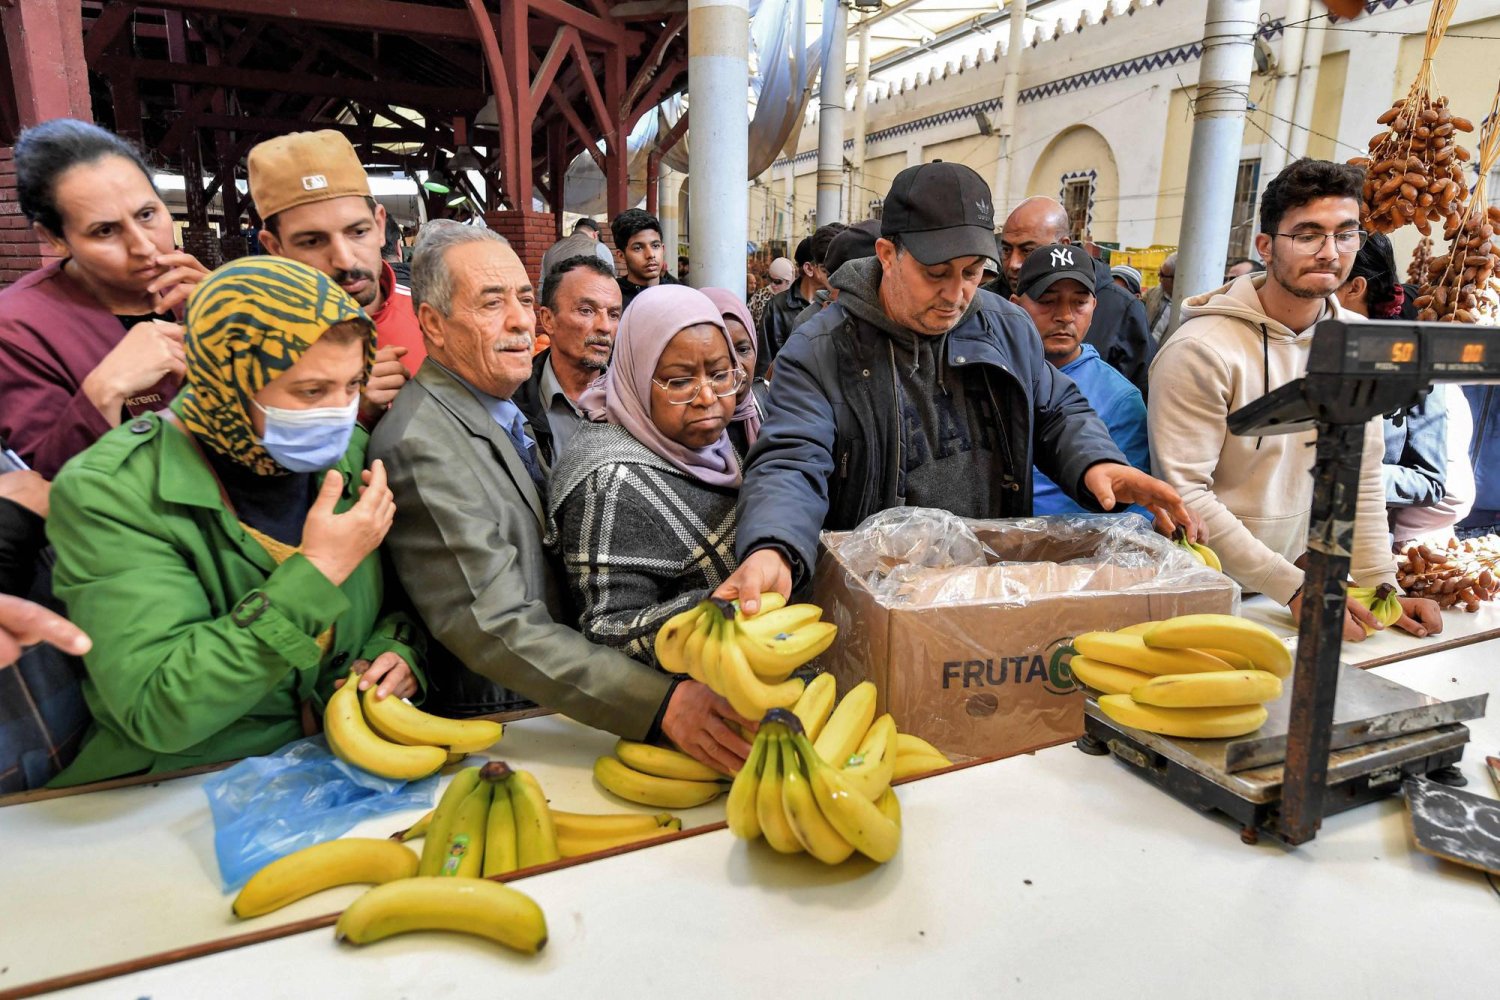 مع قرب شهر رمضان الذي يشهد عادة ازدحاماً في الأسواق يشتكي سكان مدينة بنغازي من ارتفاع أسعار السلع الغذائية (أ.ف.ب)